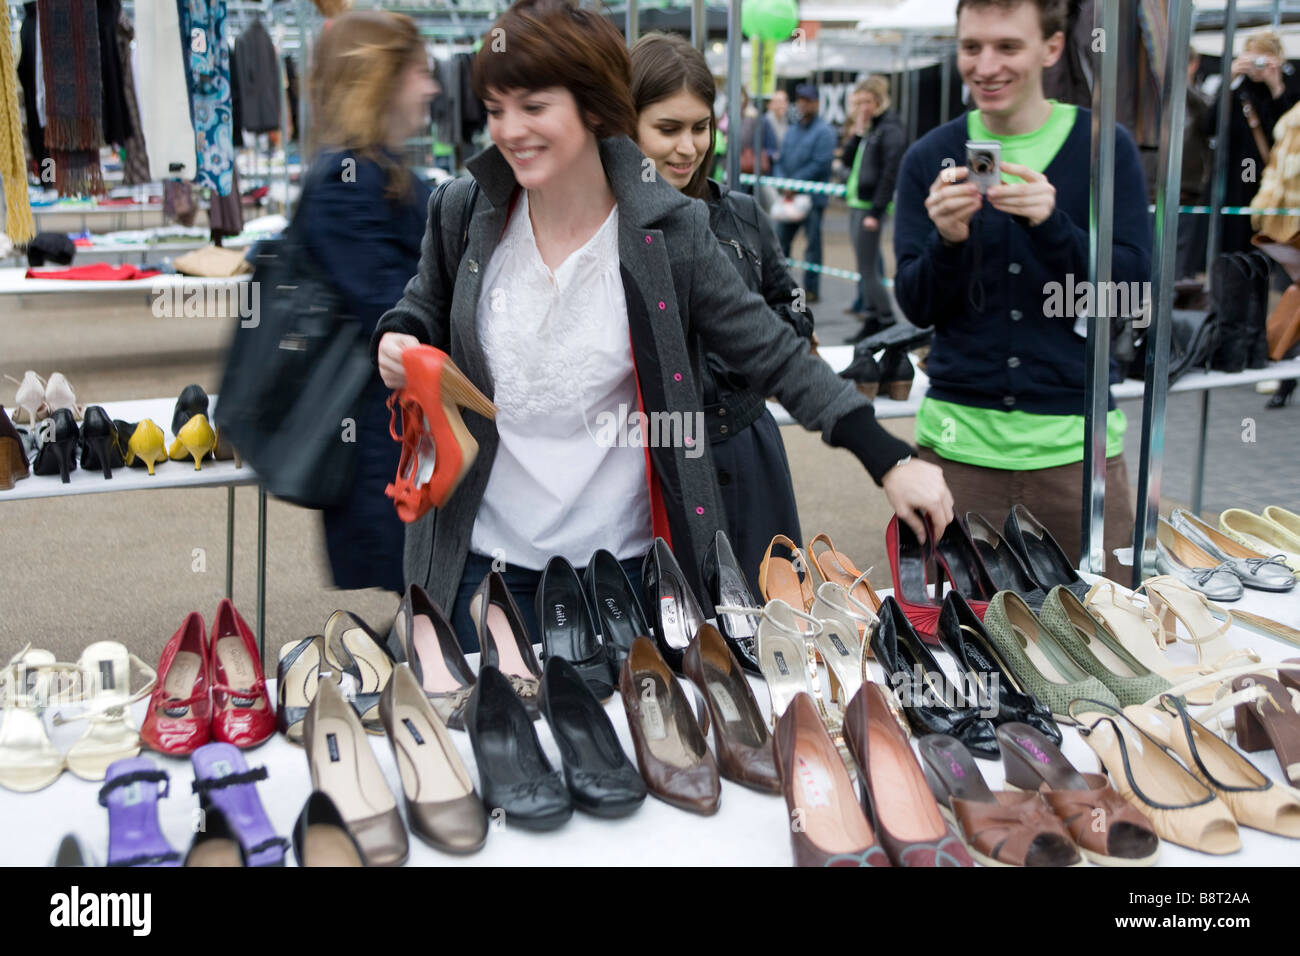 Evento de intercambio de ropa en Londres,Spitalfields Market.la gente intercambia su ropa gratis para una nueva adición a su vestuario. Foto de stock